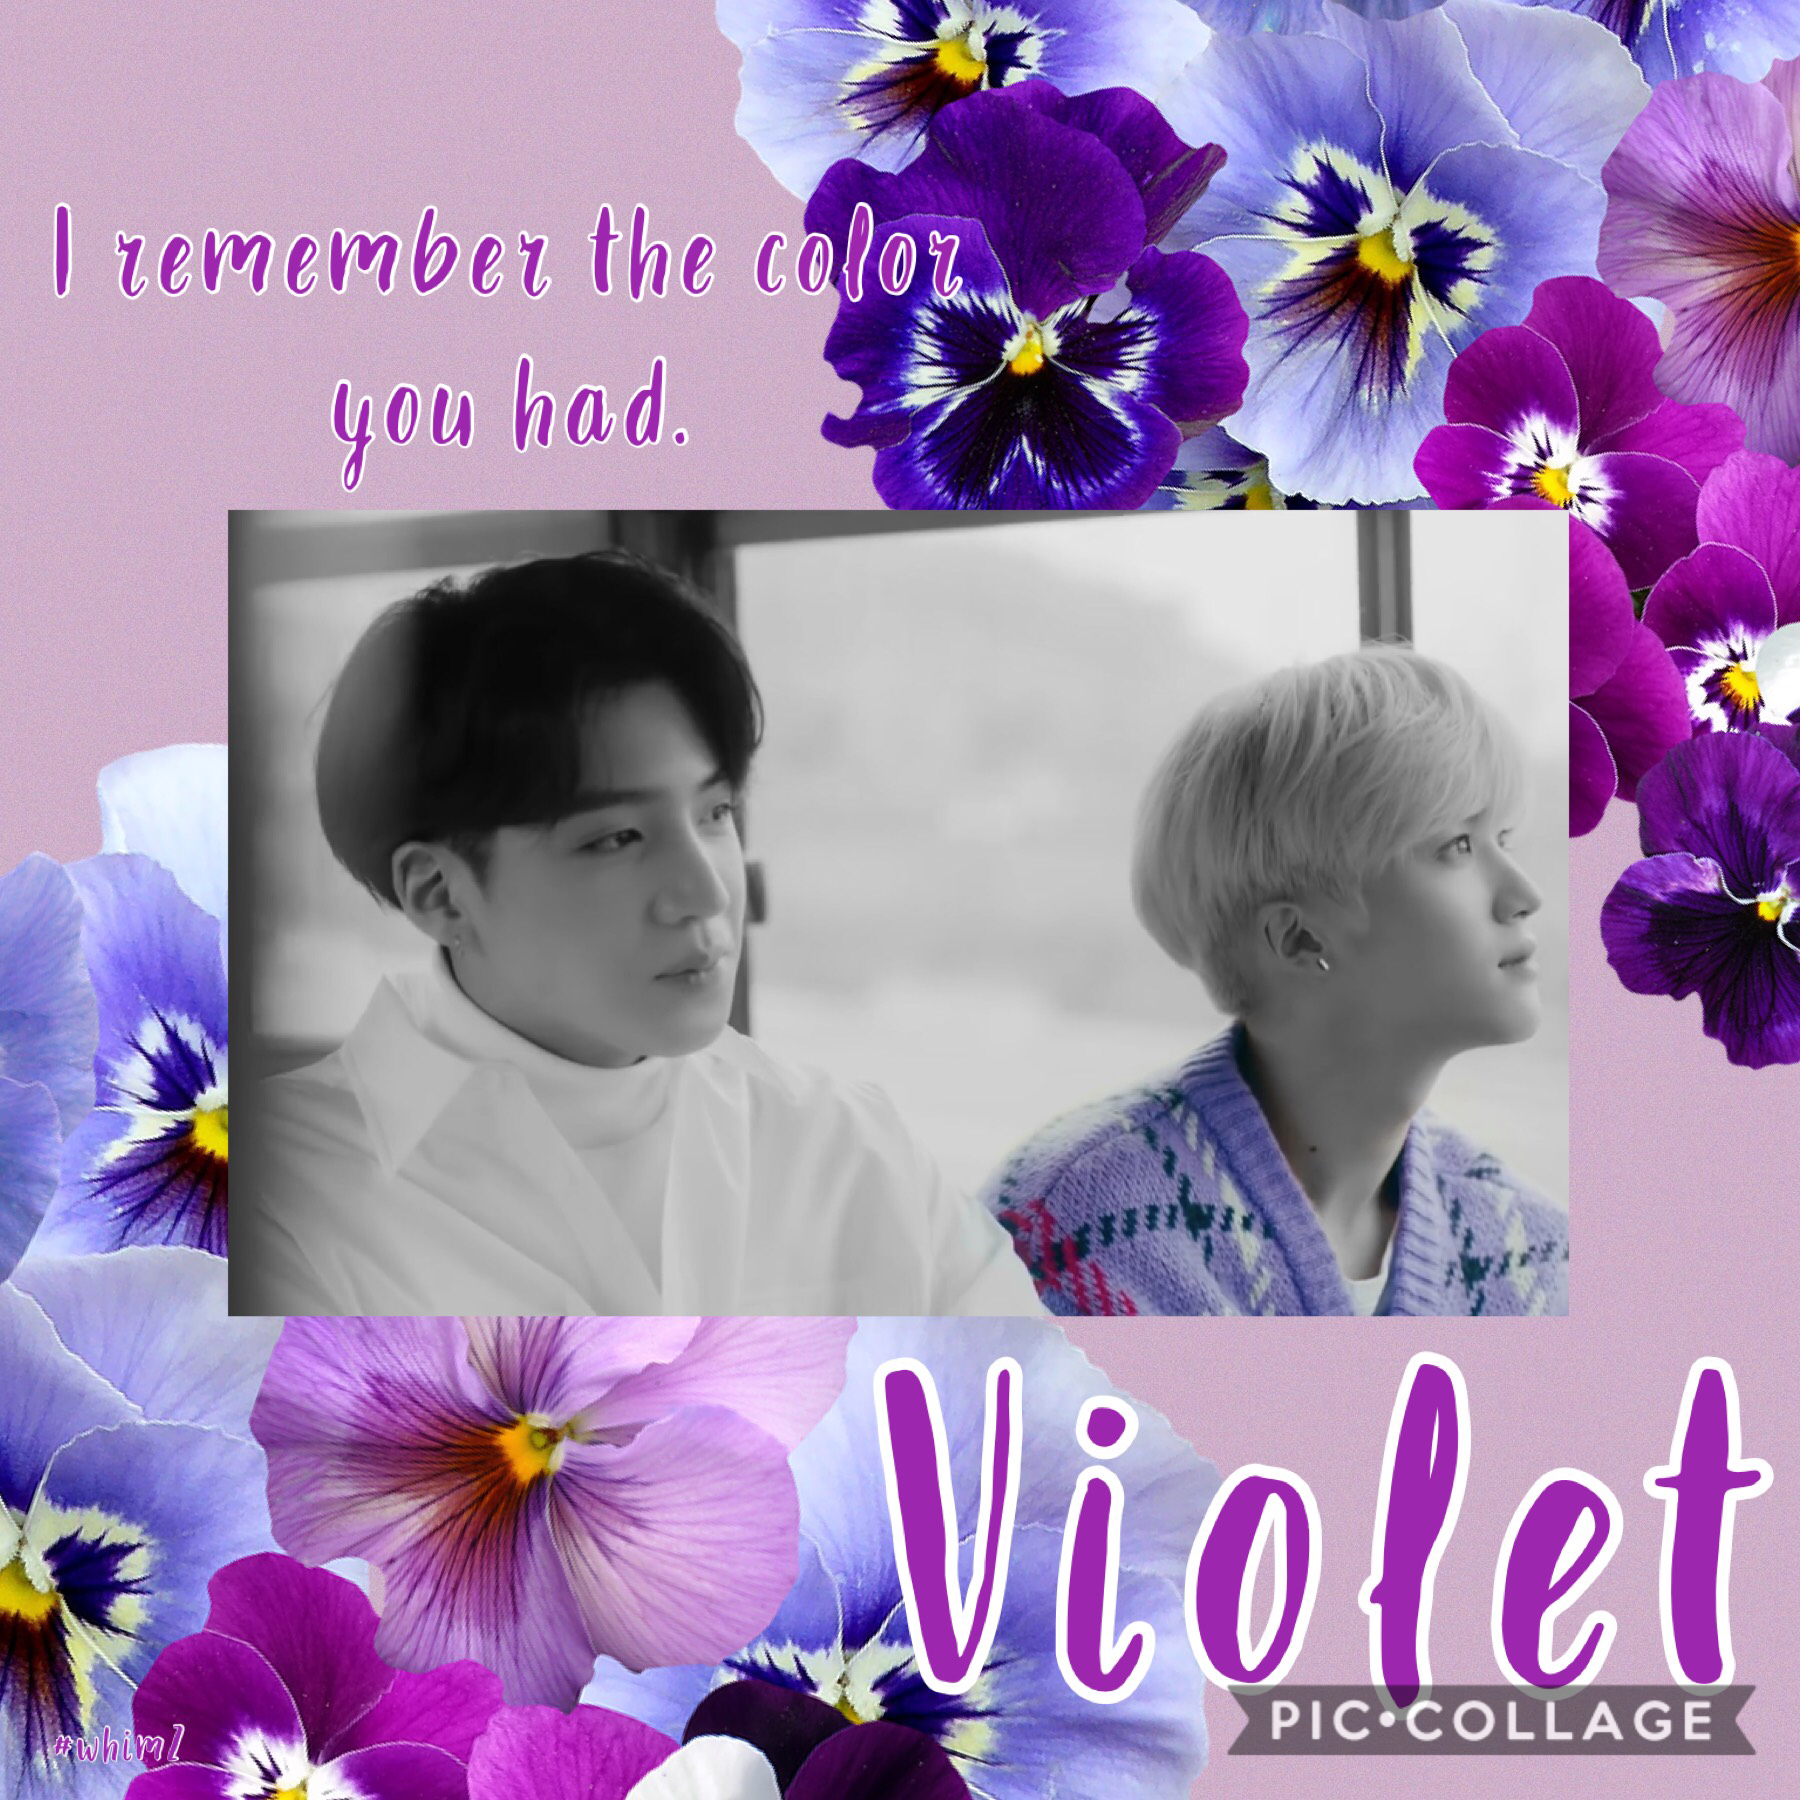 Violet edit part 2